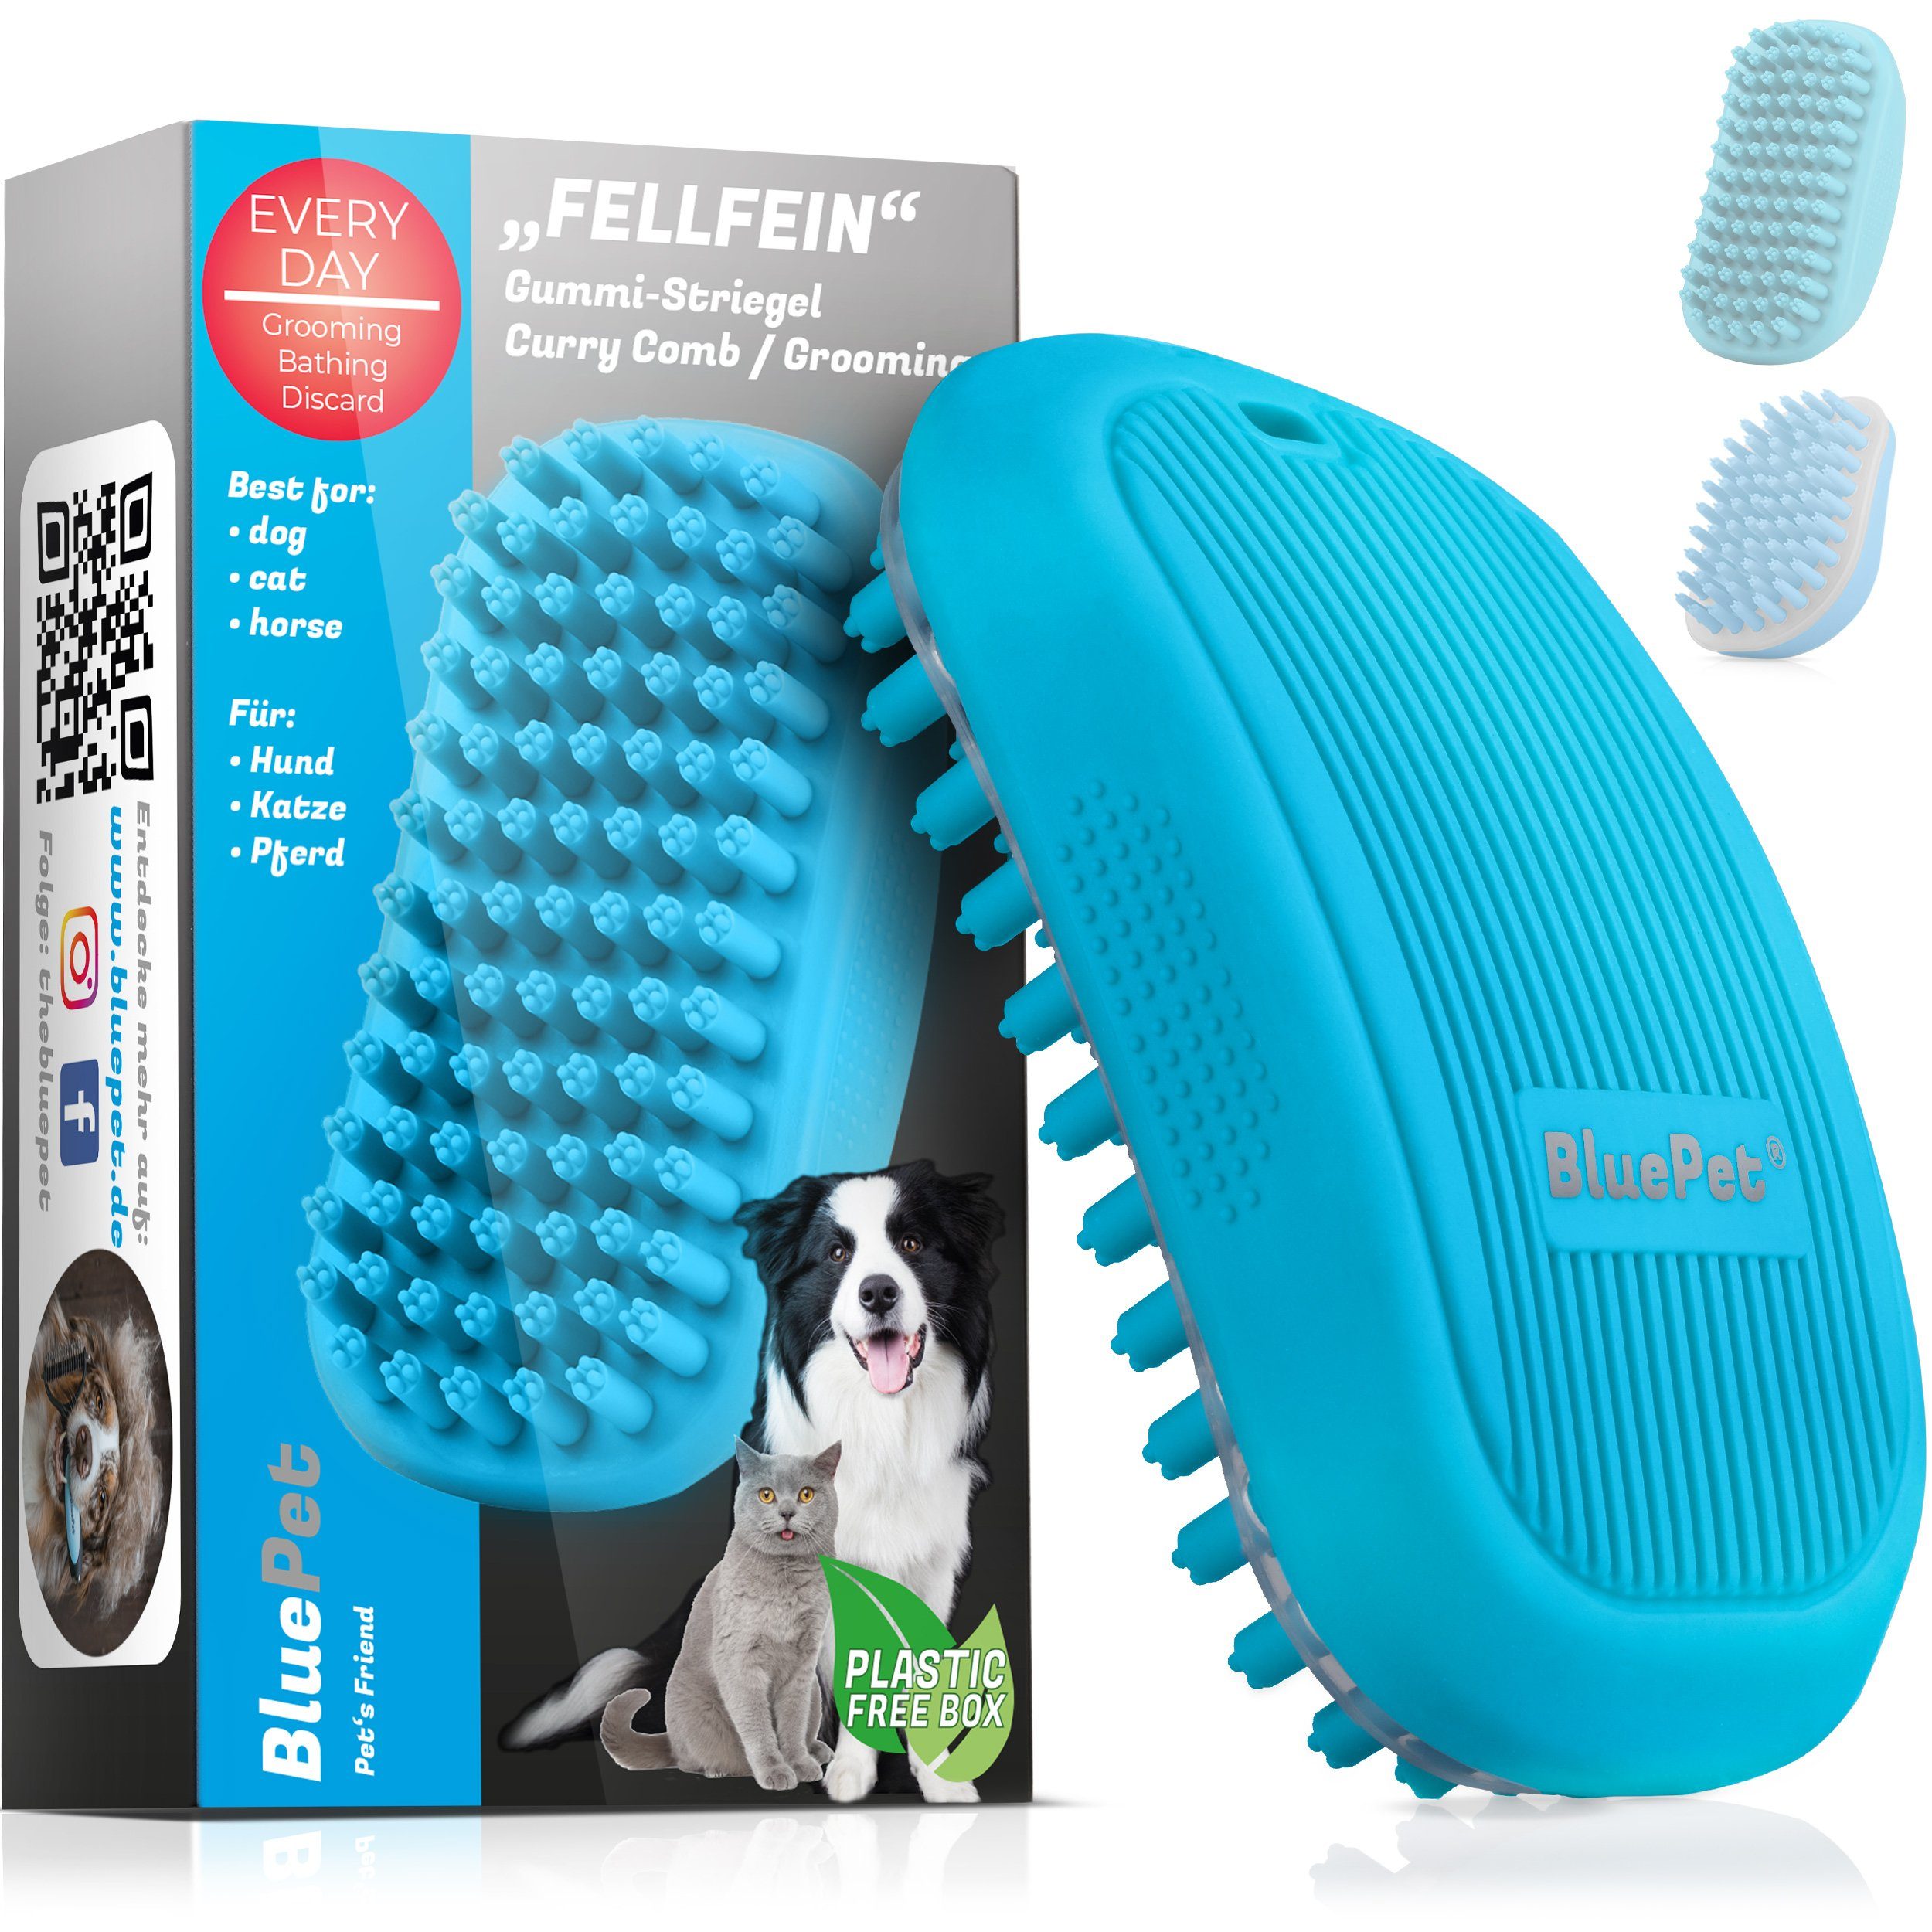 100% Qualität BluePet Striegel "FellFein" Gummistriegel, Badebürste, Hunde Fellpflege und für Katzen